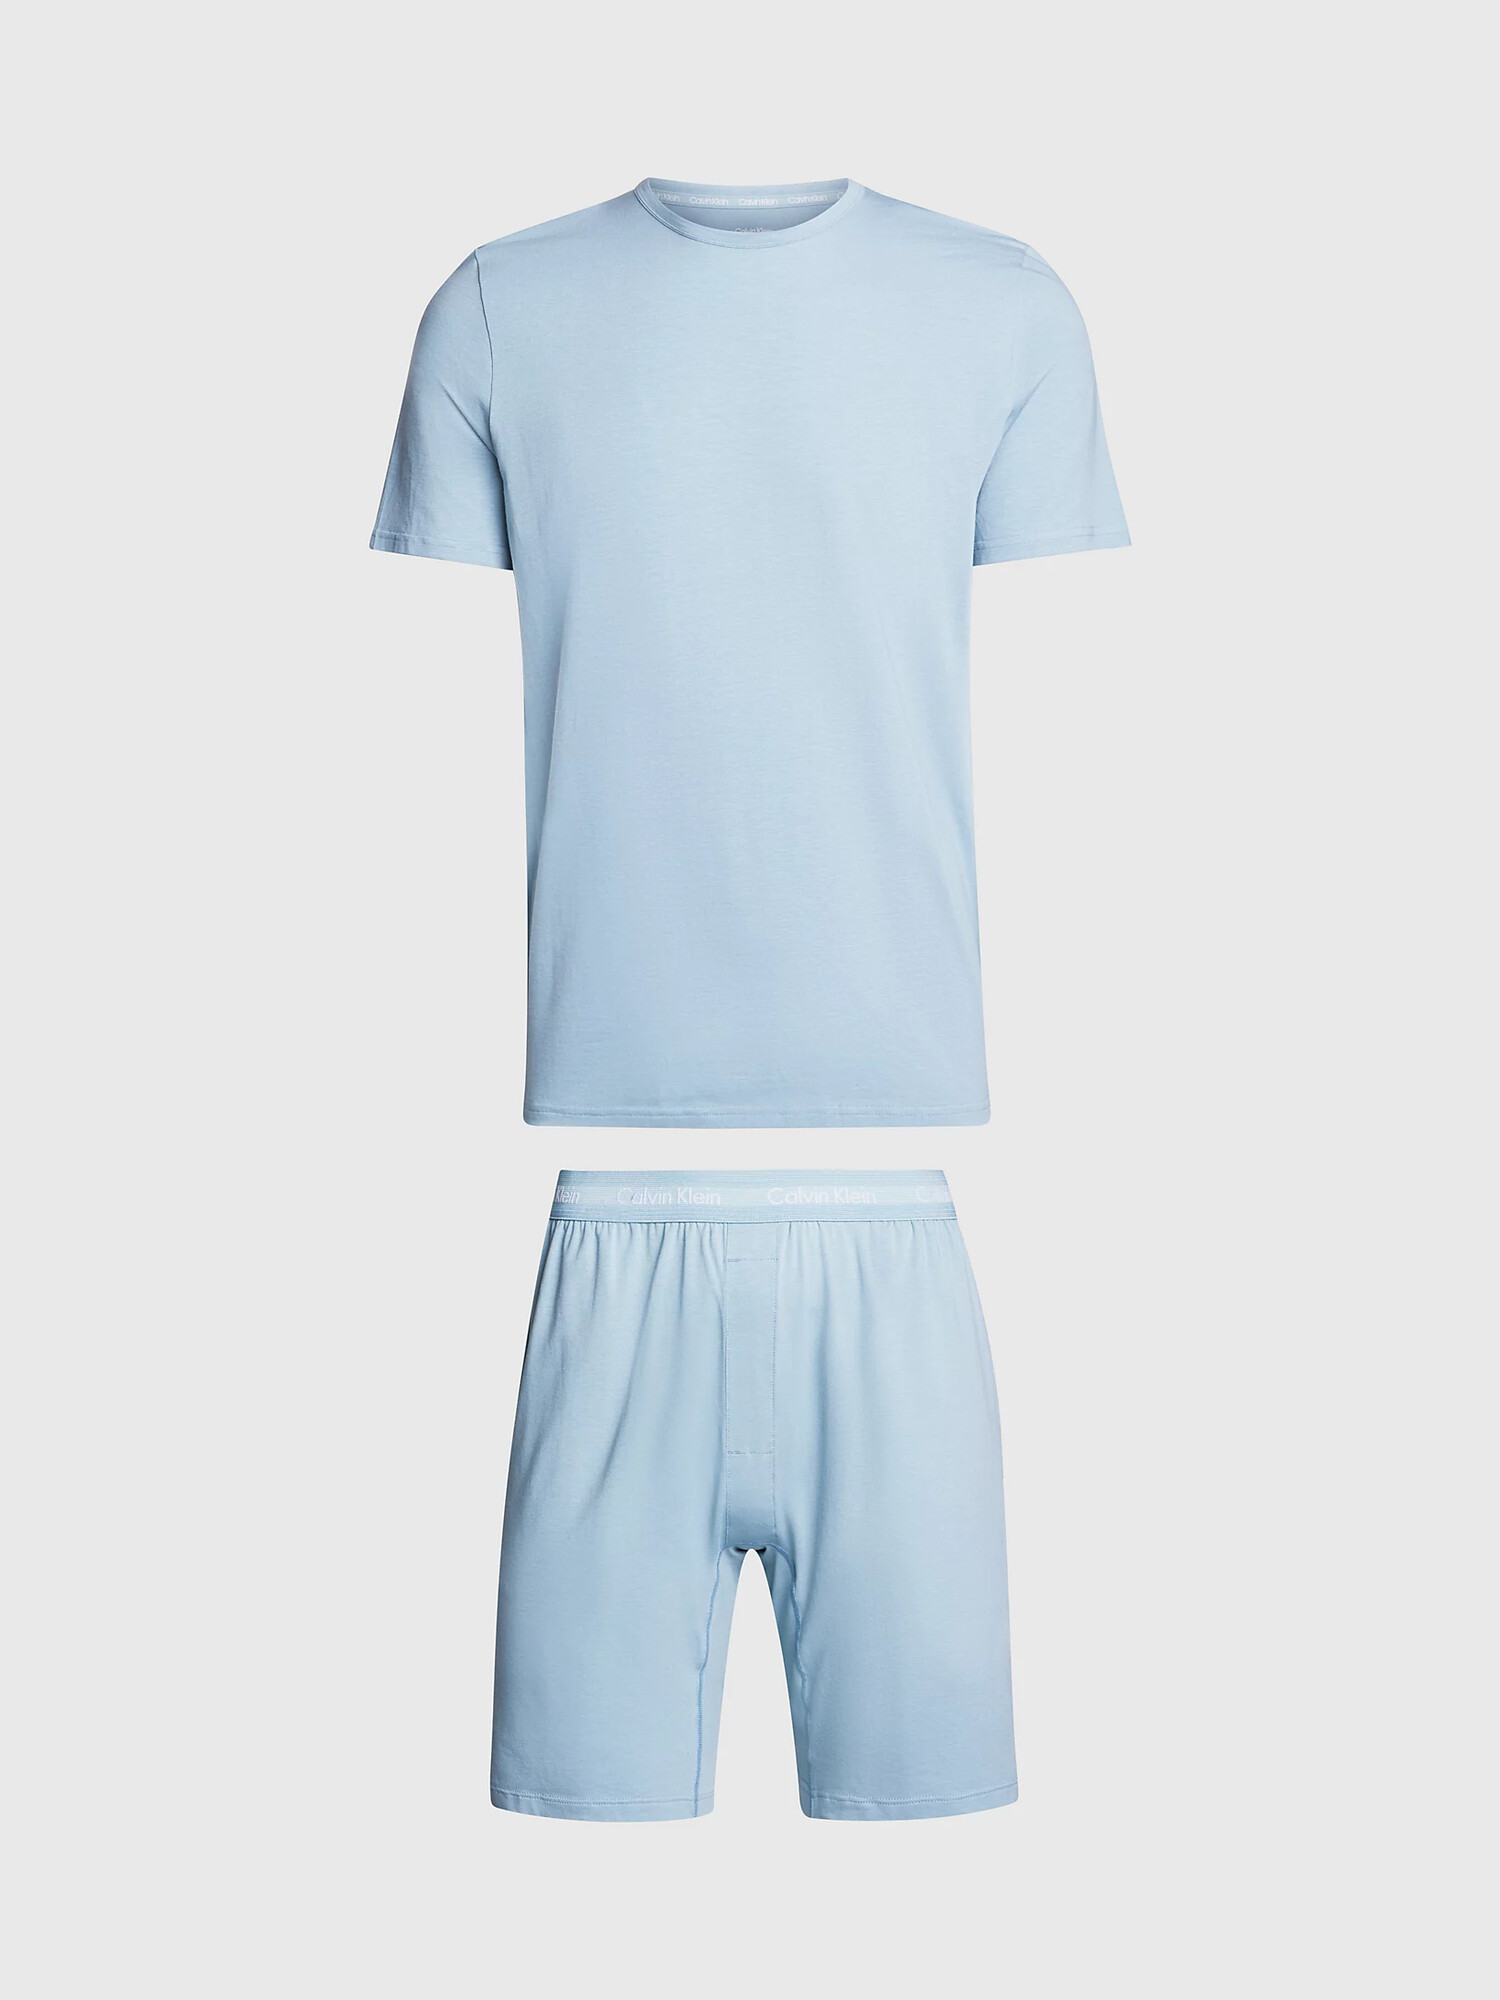 Pánské pyžamo NM2428E CYA modrošedé - Calvin Klein M